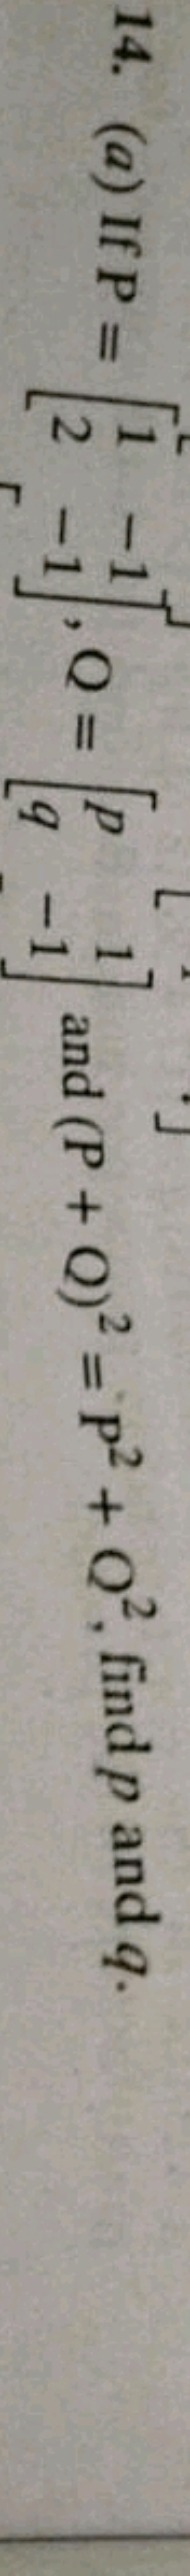 14. (a) If P=[12​−1−1​],Q=[pq​1−1​] and (P+Q)2=P2+Q2, find p and q.
